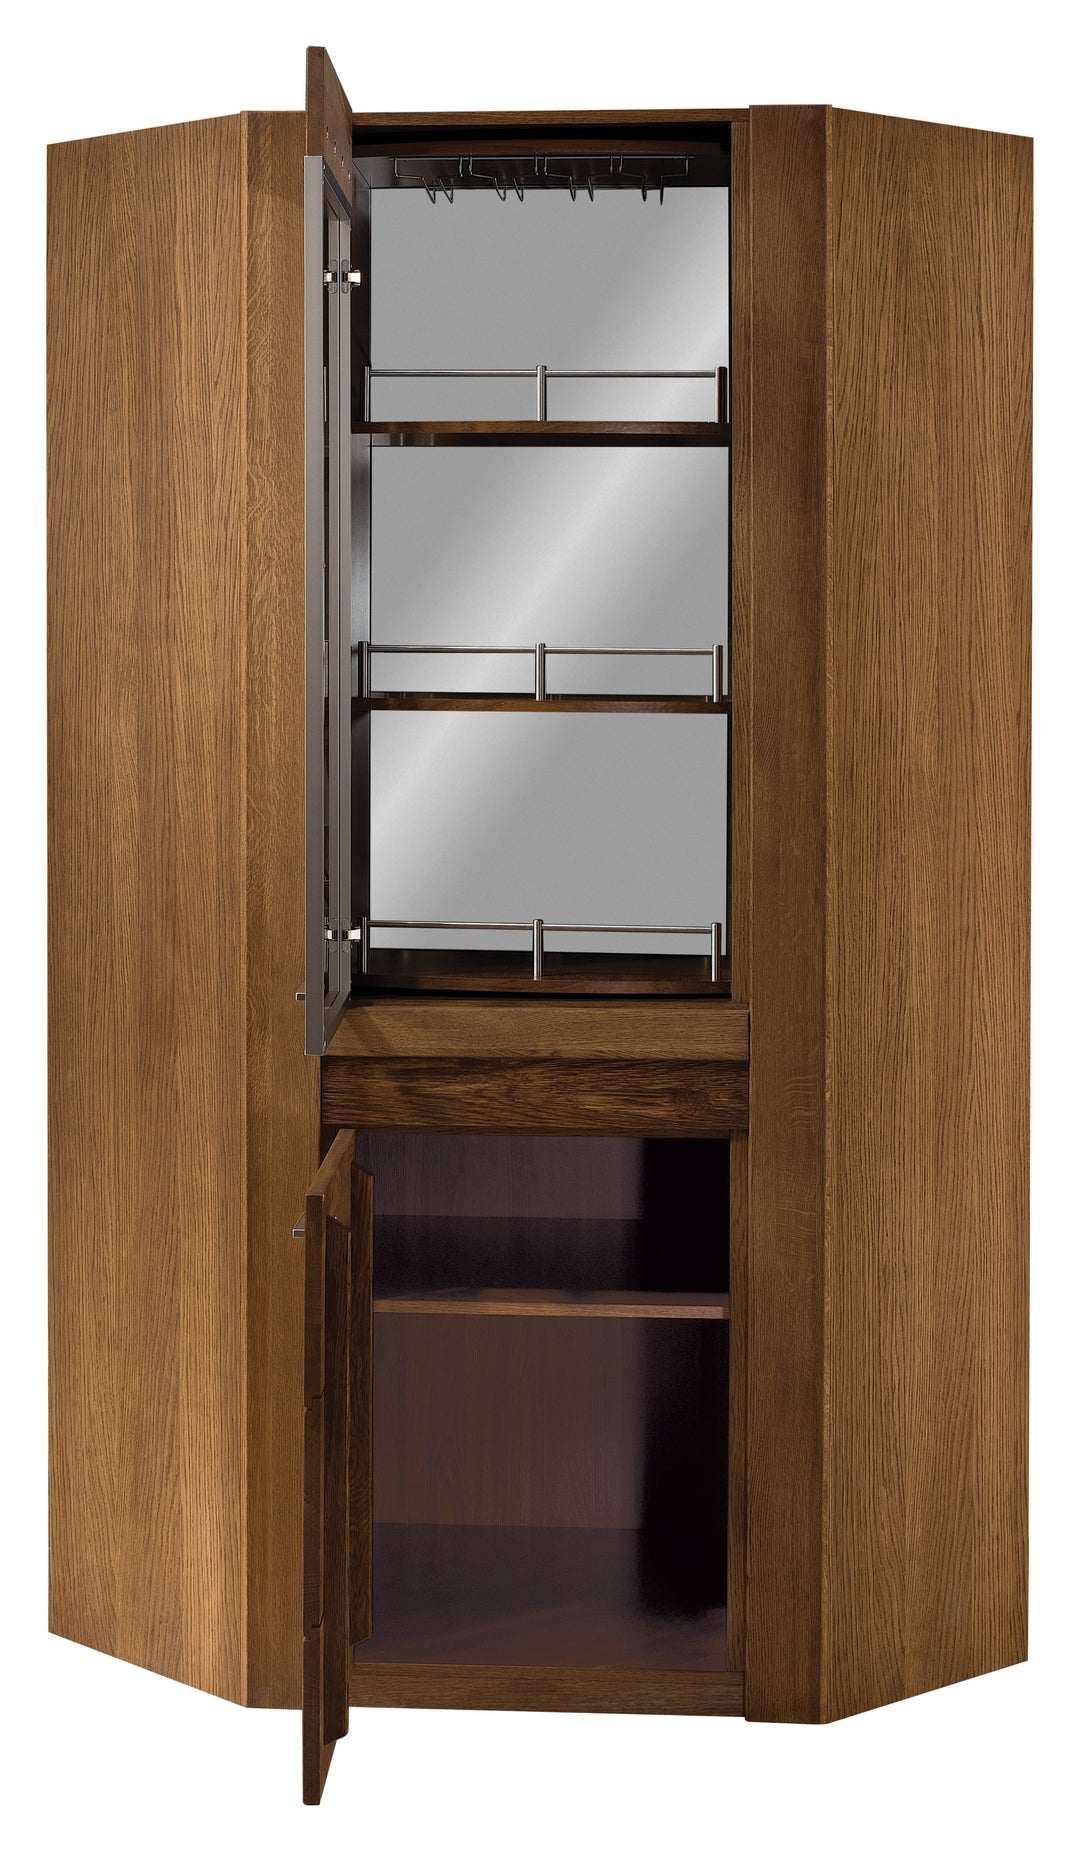 VESKOR Mueble vitrina de madera maciza de roble de la colección Velvet. Mueble nórdico con un diseño moderno 